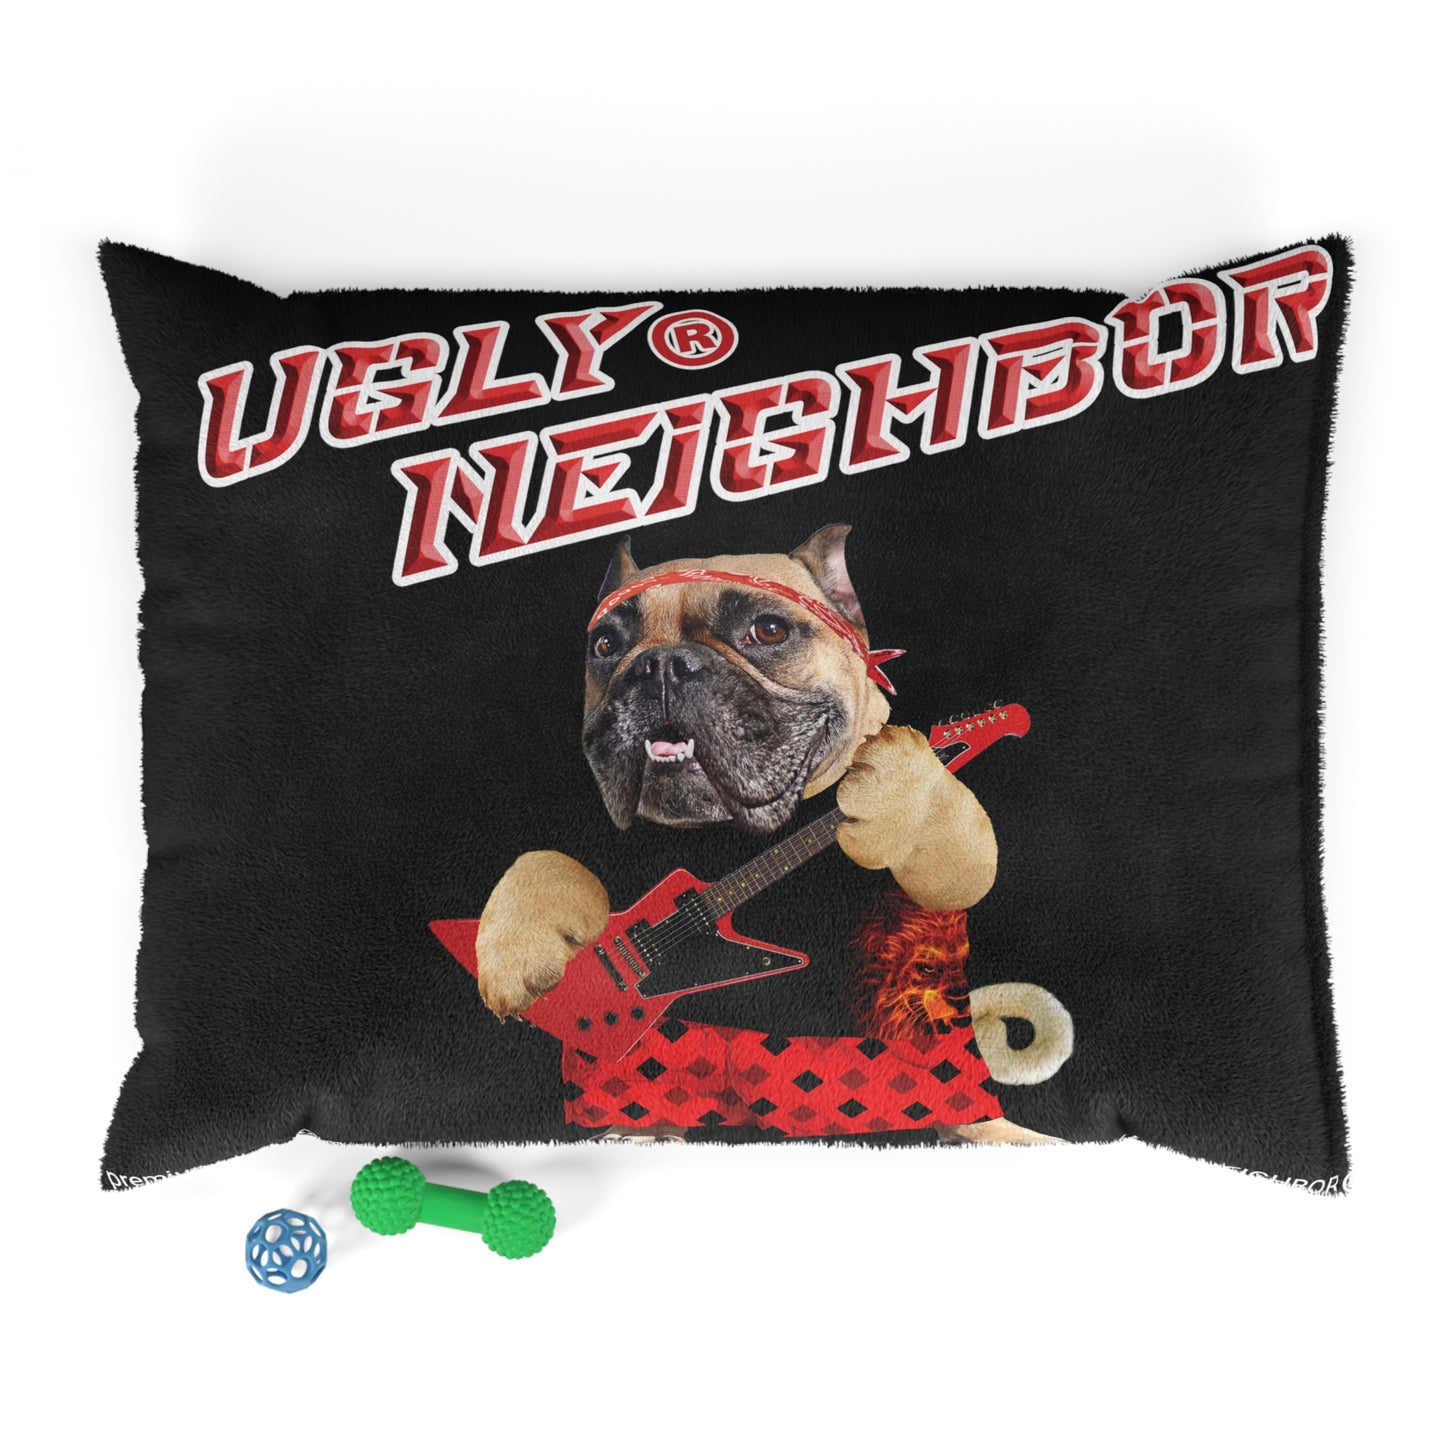 Ugly Neighbor II Pet Bed